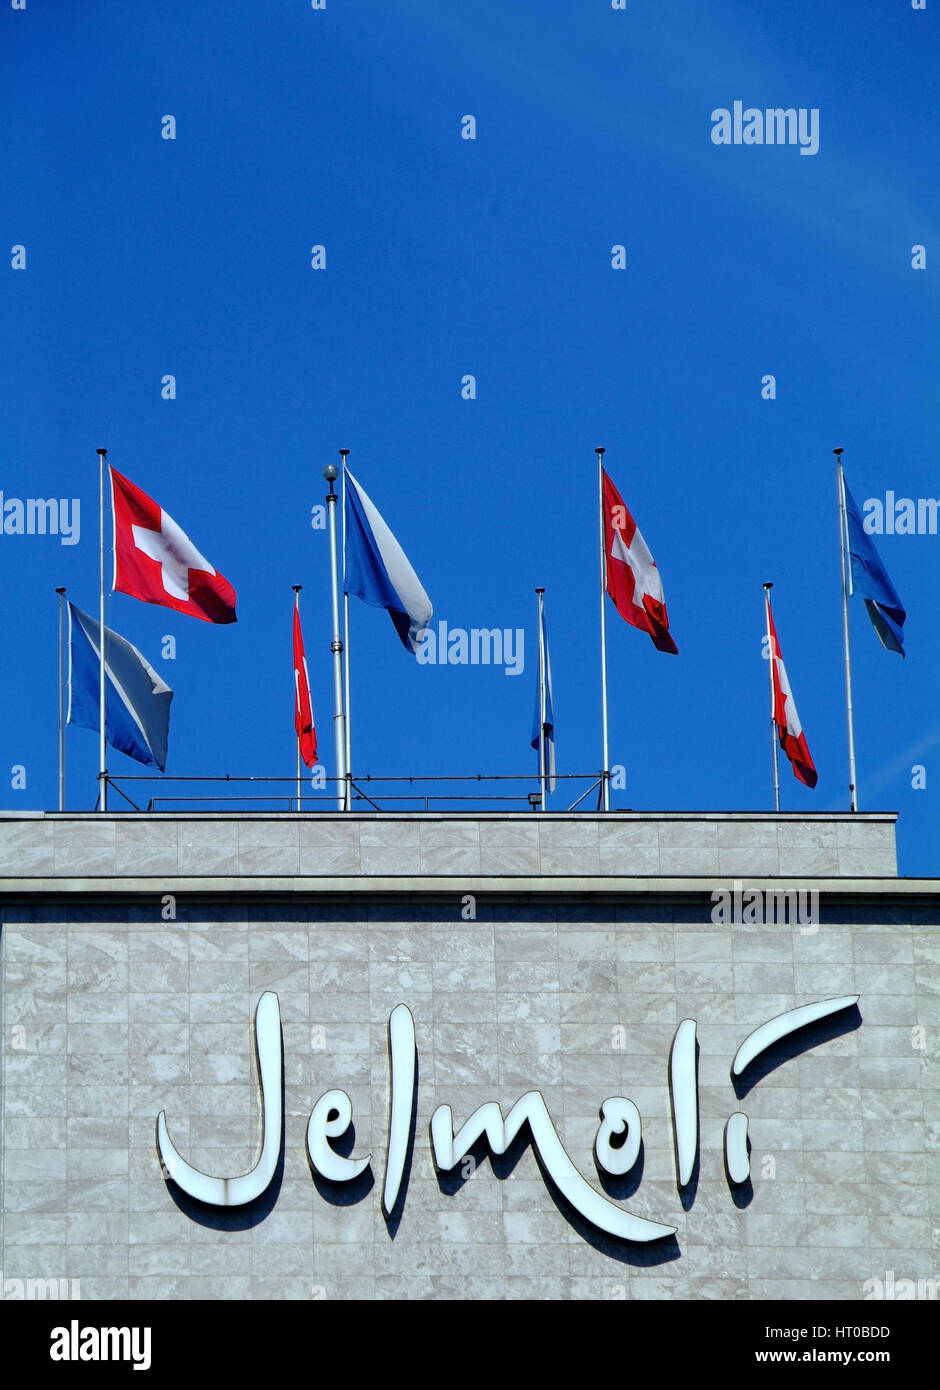 bekanntes Kaufhaus Jelmoli in Zuerich, Schweiz - Swiss department store Jelmoli in Zurich Stock Photo